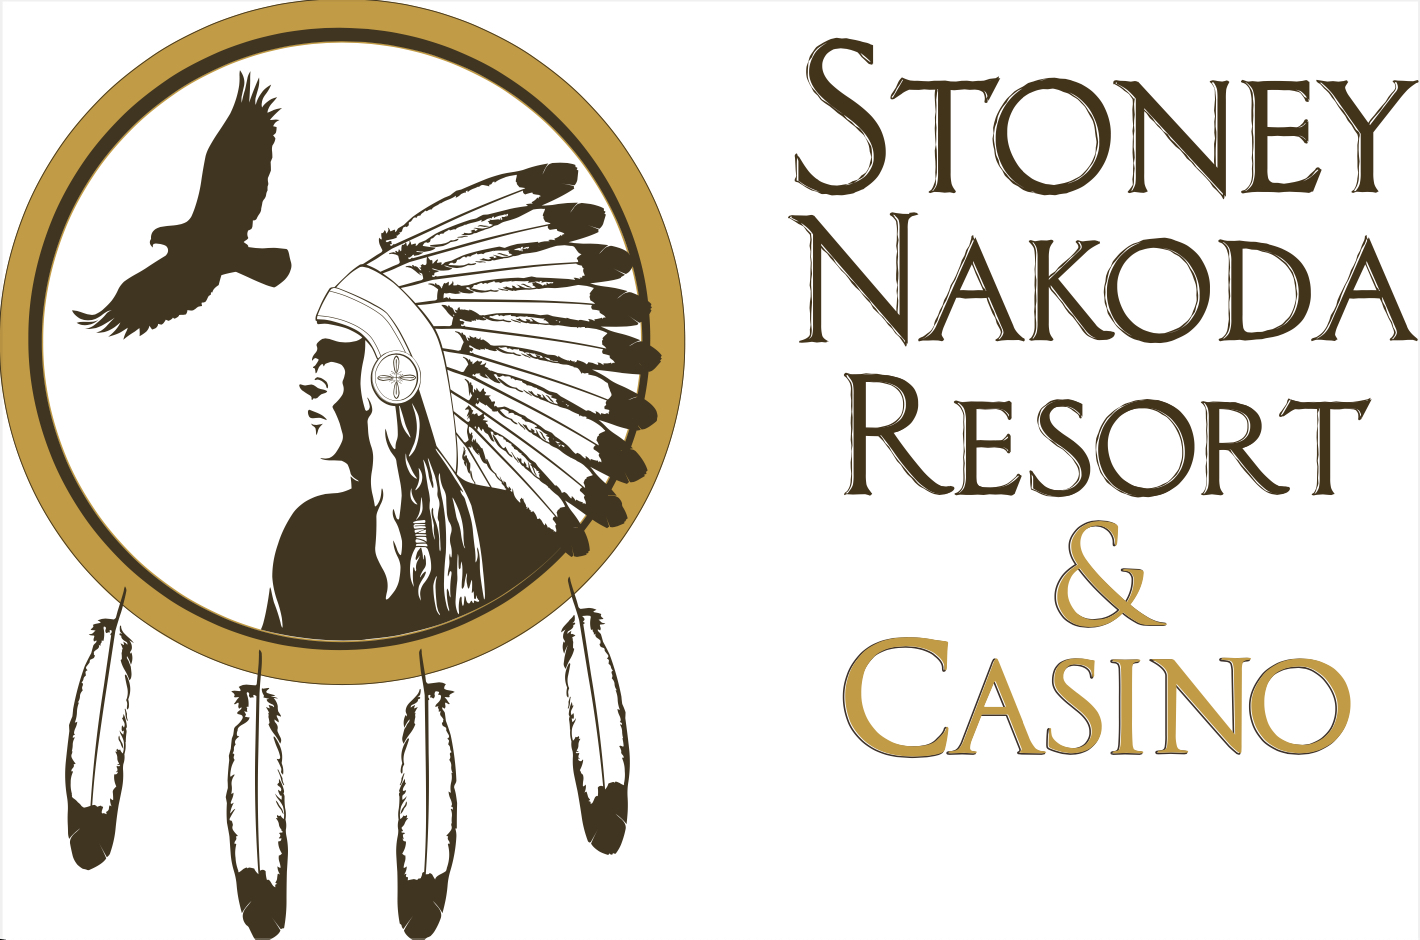 Stoney Nakoda Resort and Casino logo